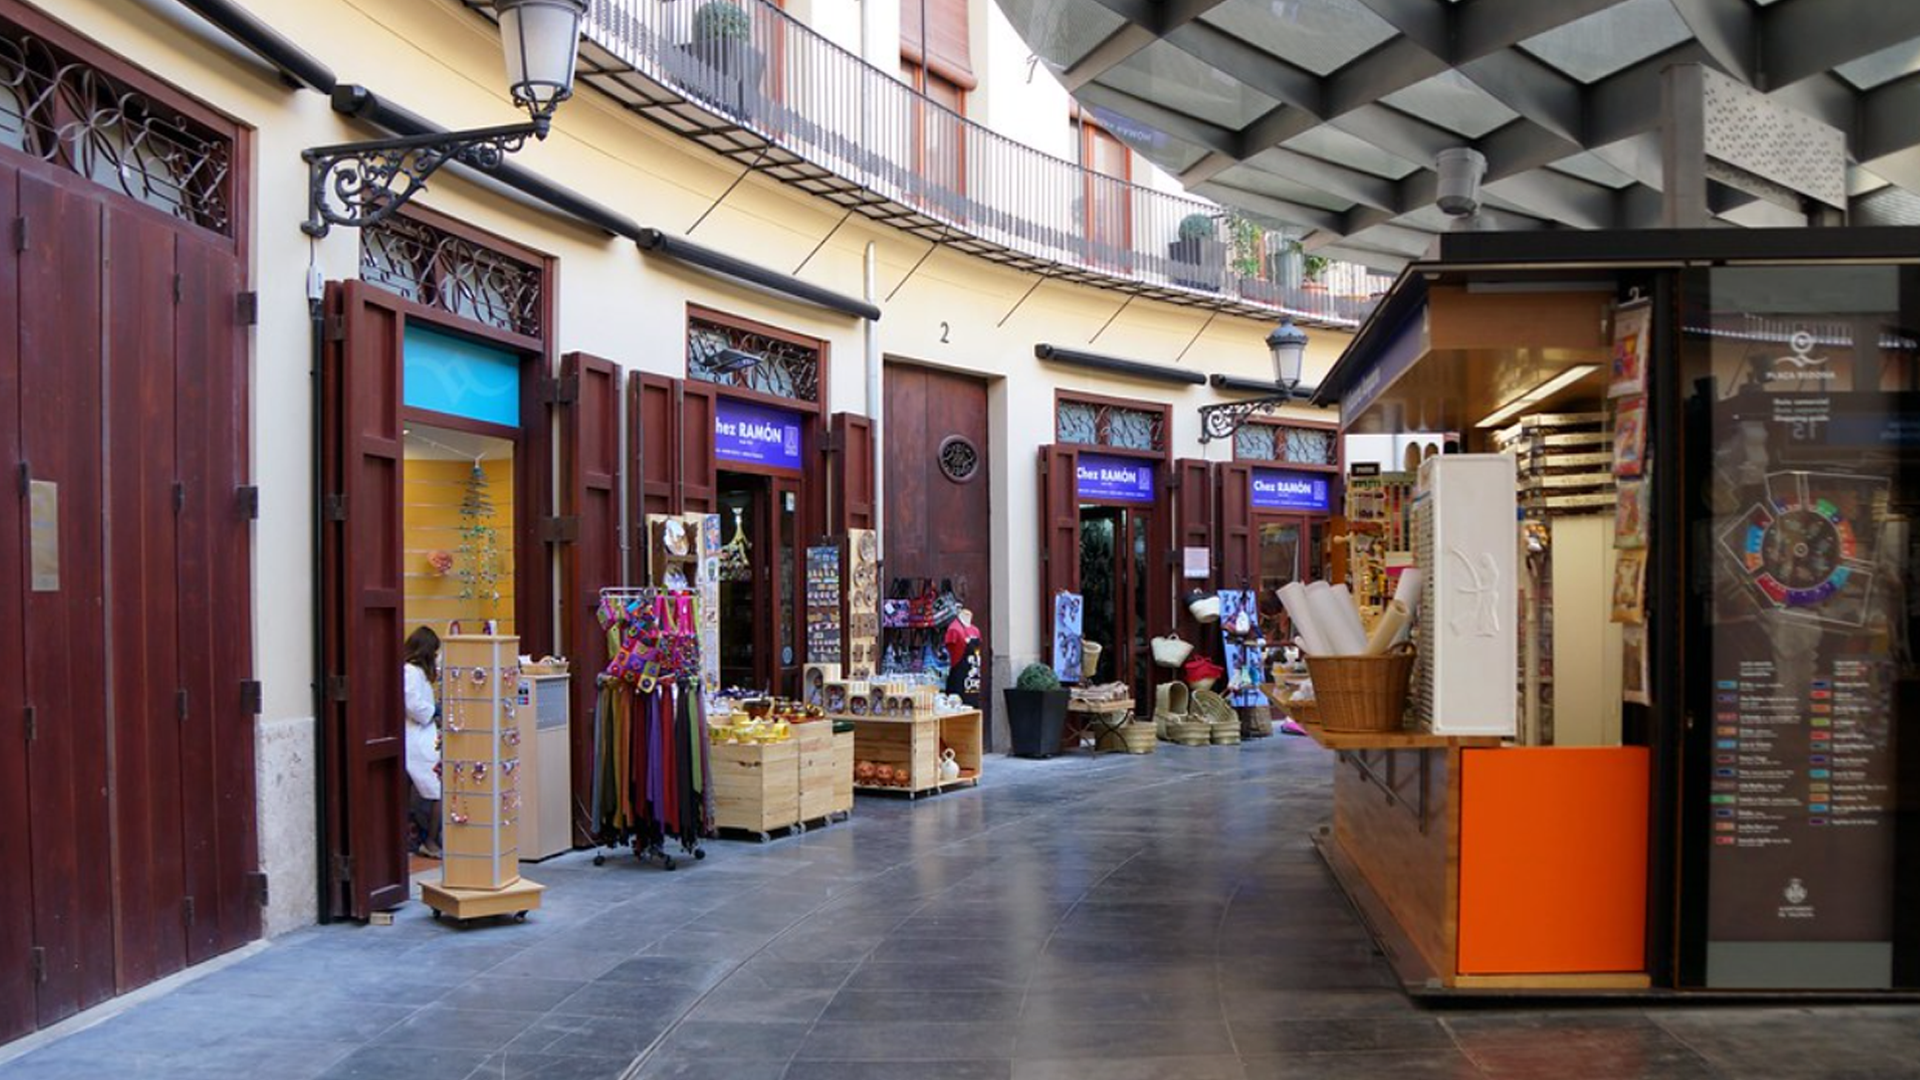 Los pequeños comercios valencianos, negocio en vías de extinción